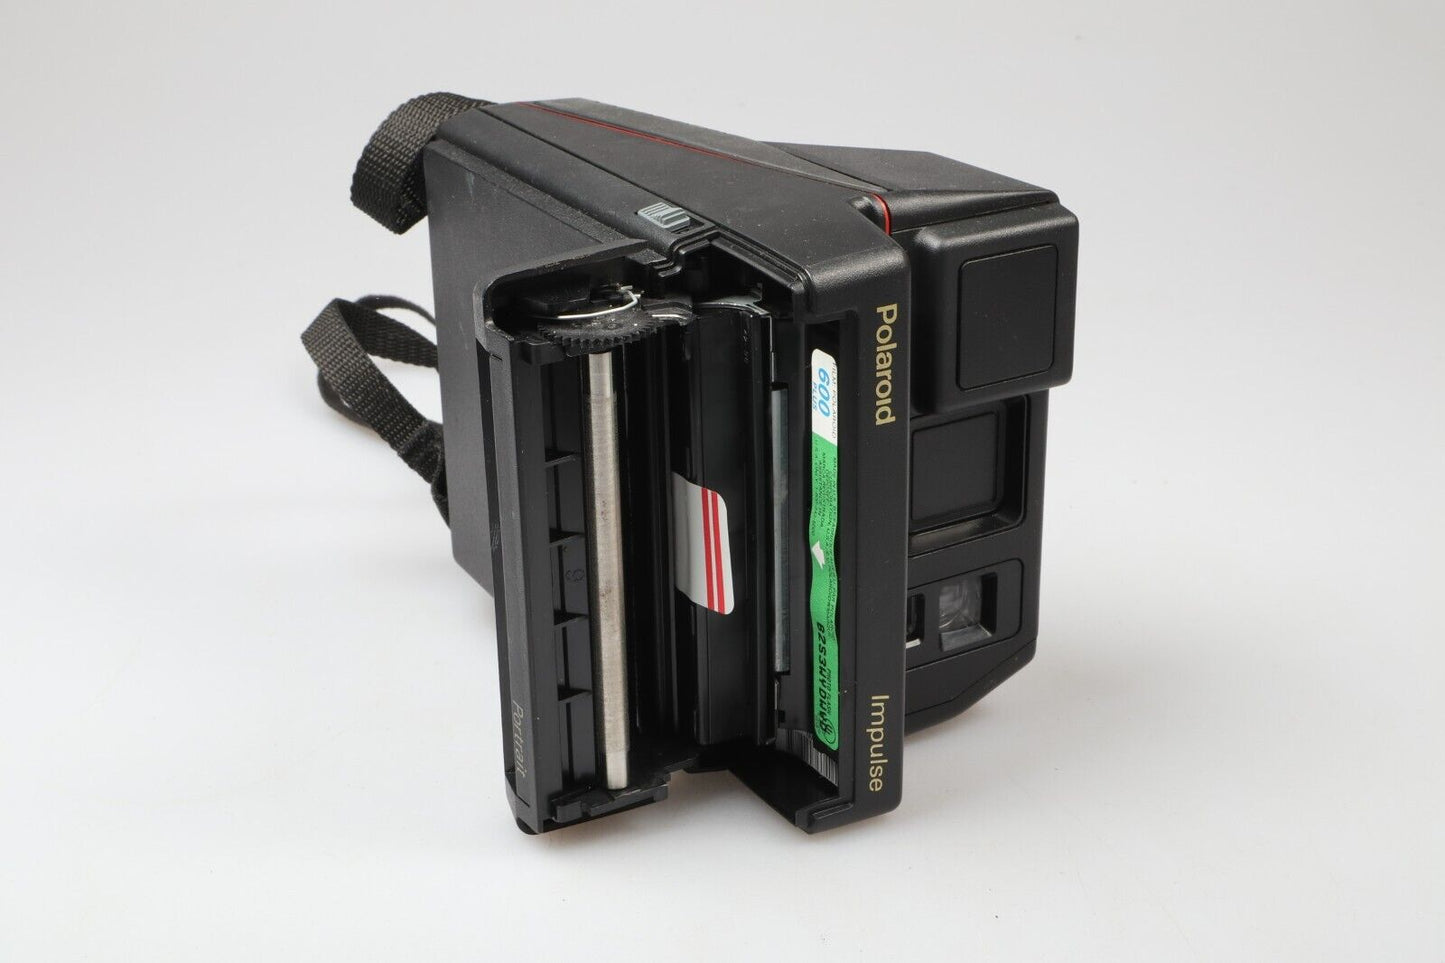 Polaroid Impulse Portrait | Instant Film Camera | 600 Film | Black